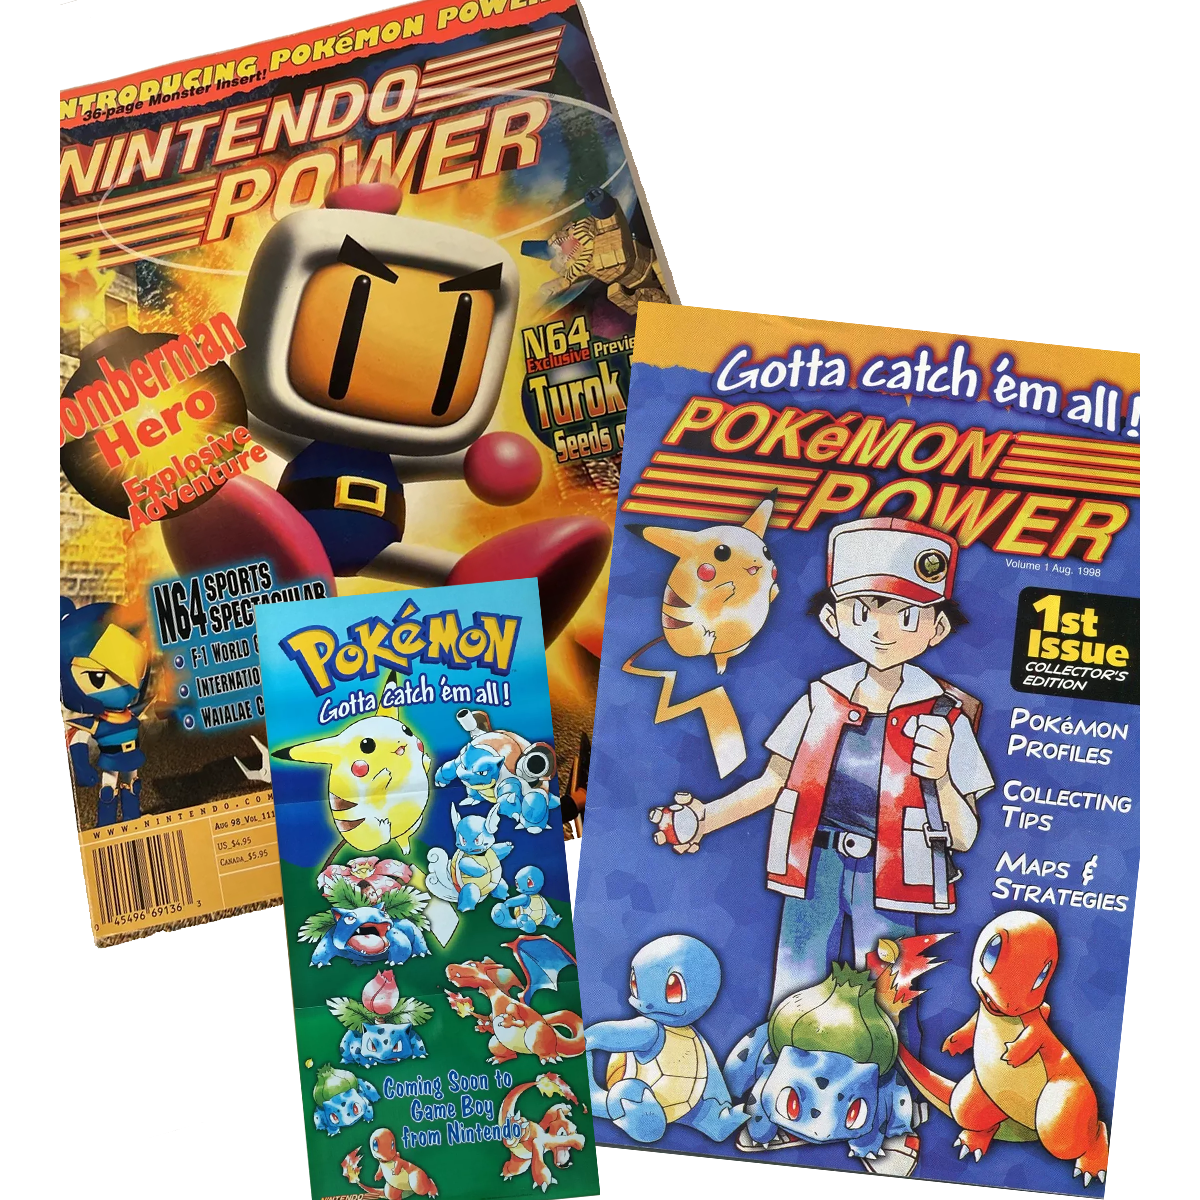 Nintendo Power Magazine (#111) - With Pokemon Poster and Pokemon Power Volume 1